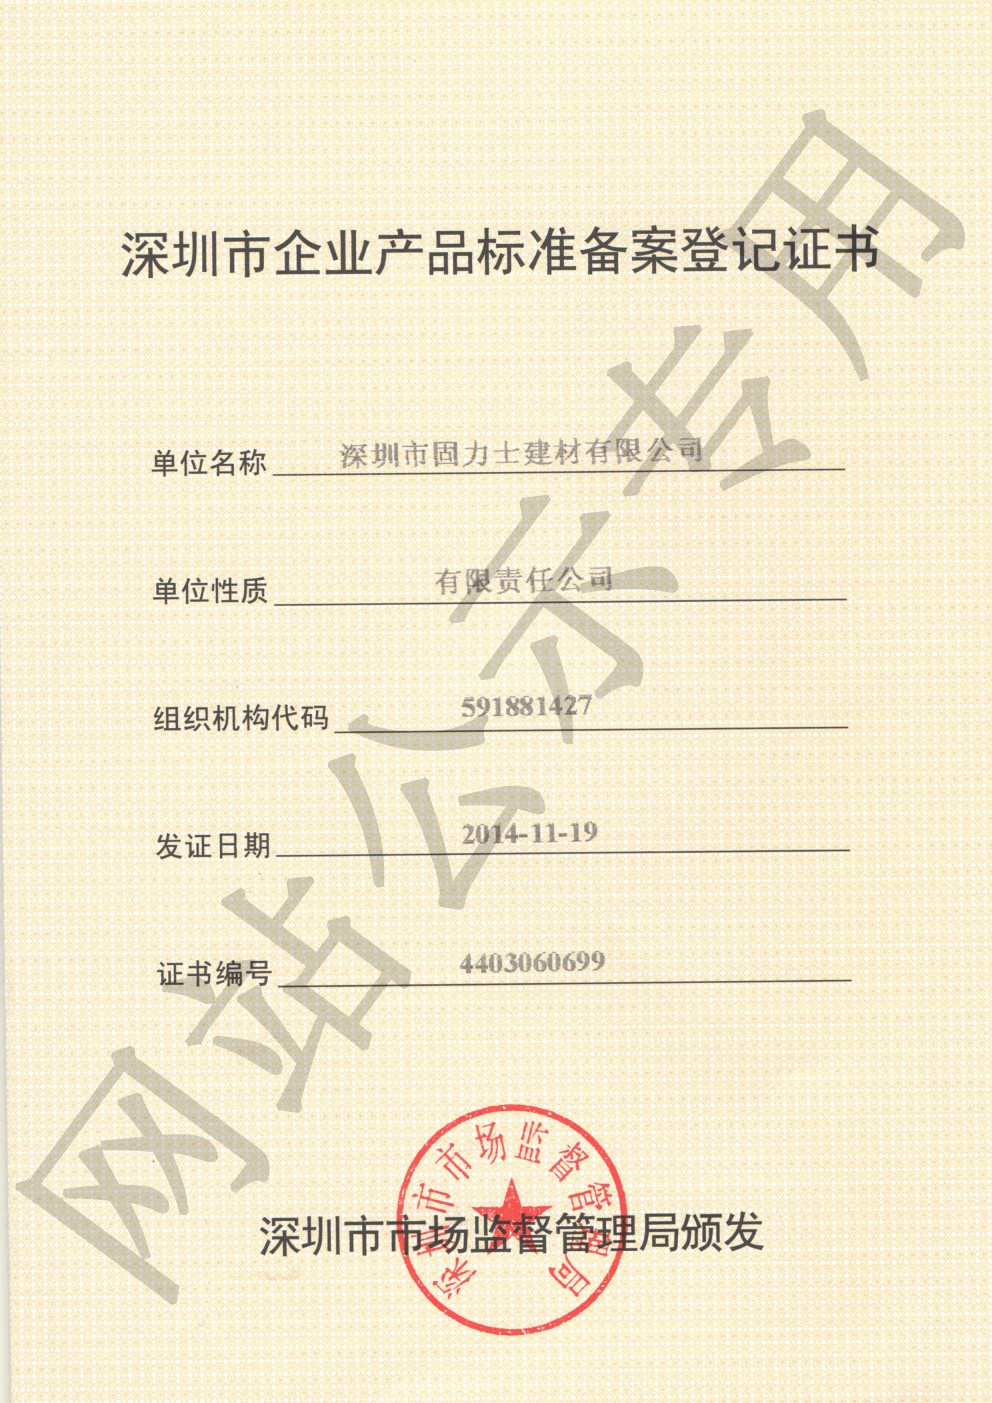 酒泉企业产品标准登记证书